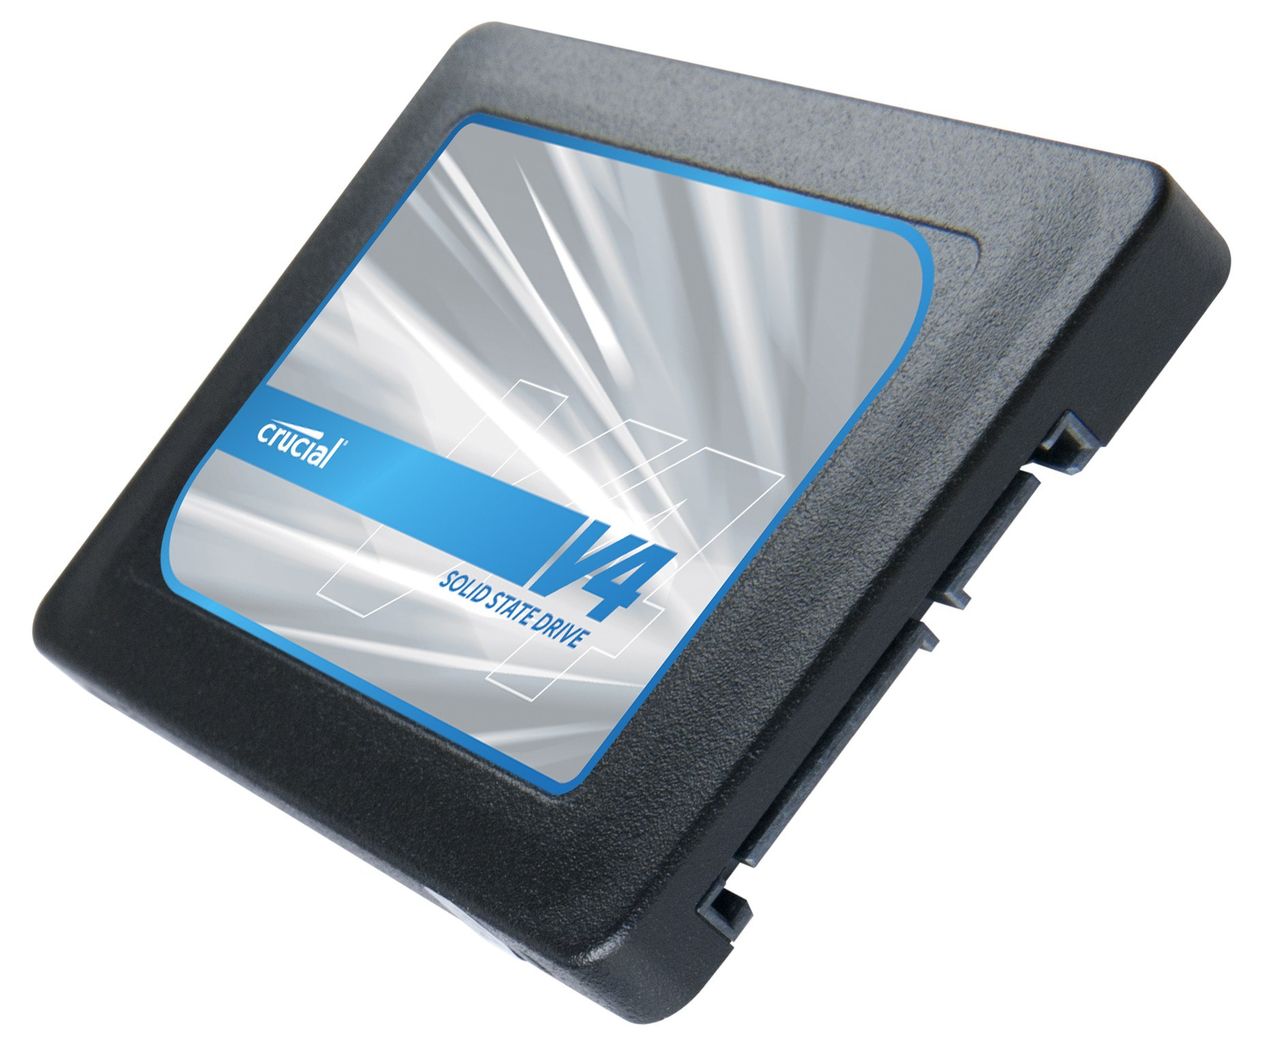 Crucial V4 - budżetowe SSD dla starszych PC. Warto kupić?